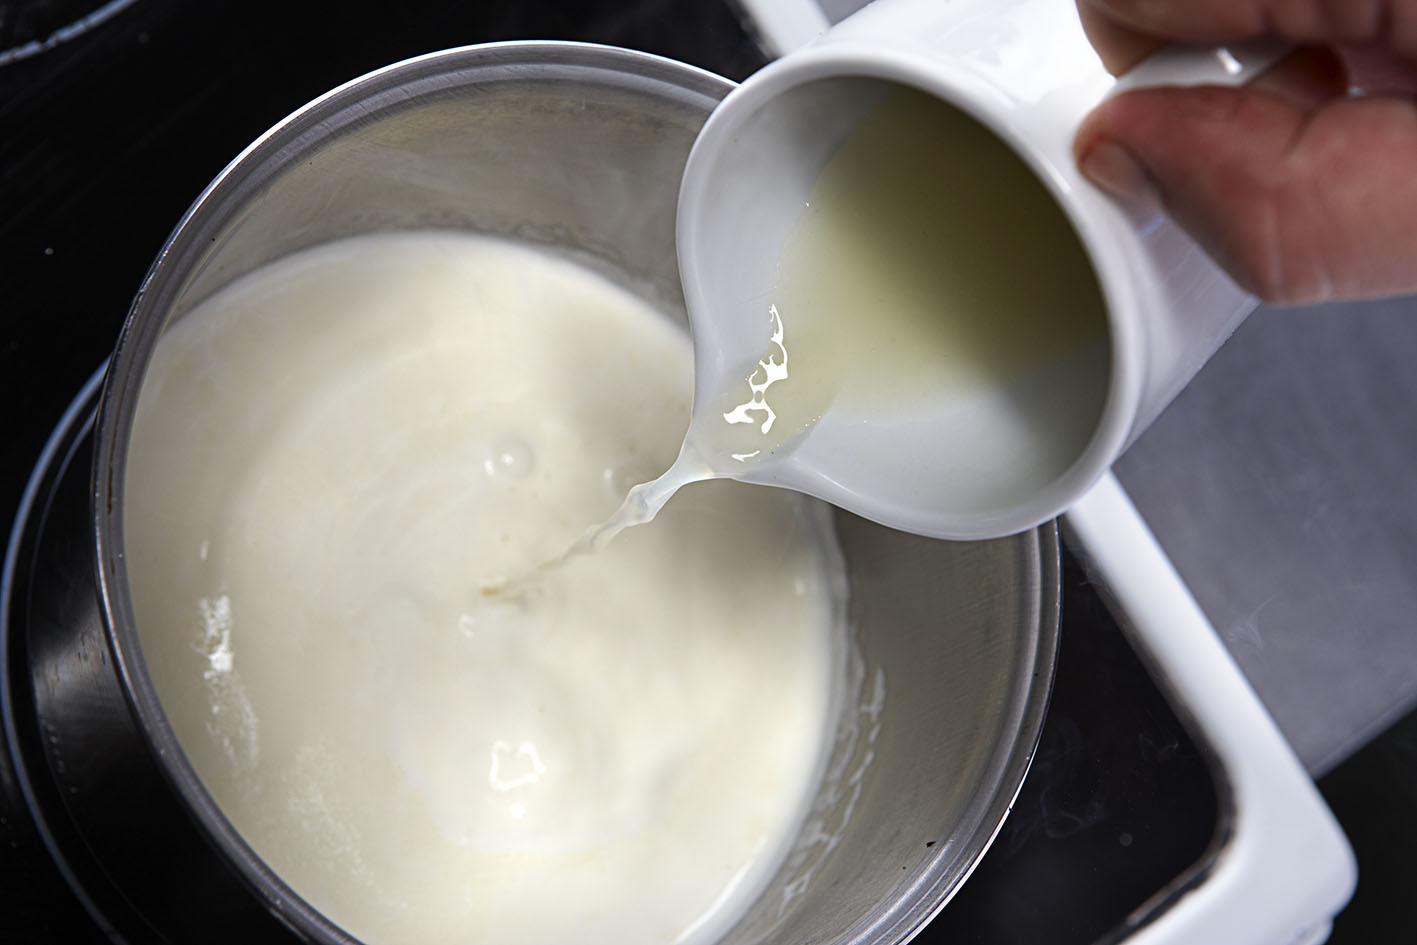 1. Mezclar los ingredientes para hacer la crema de limón.